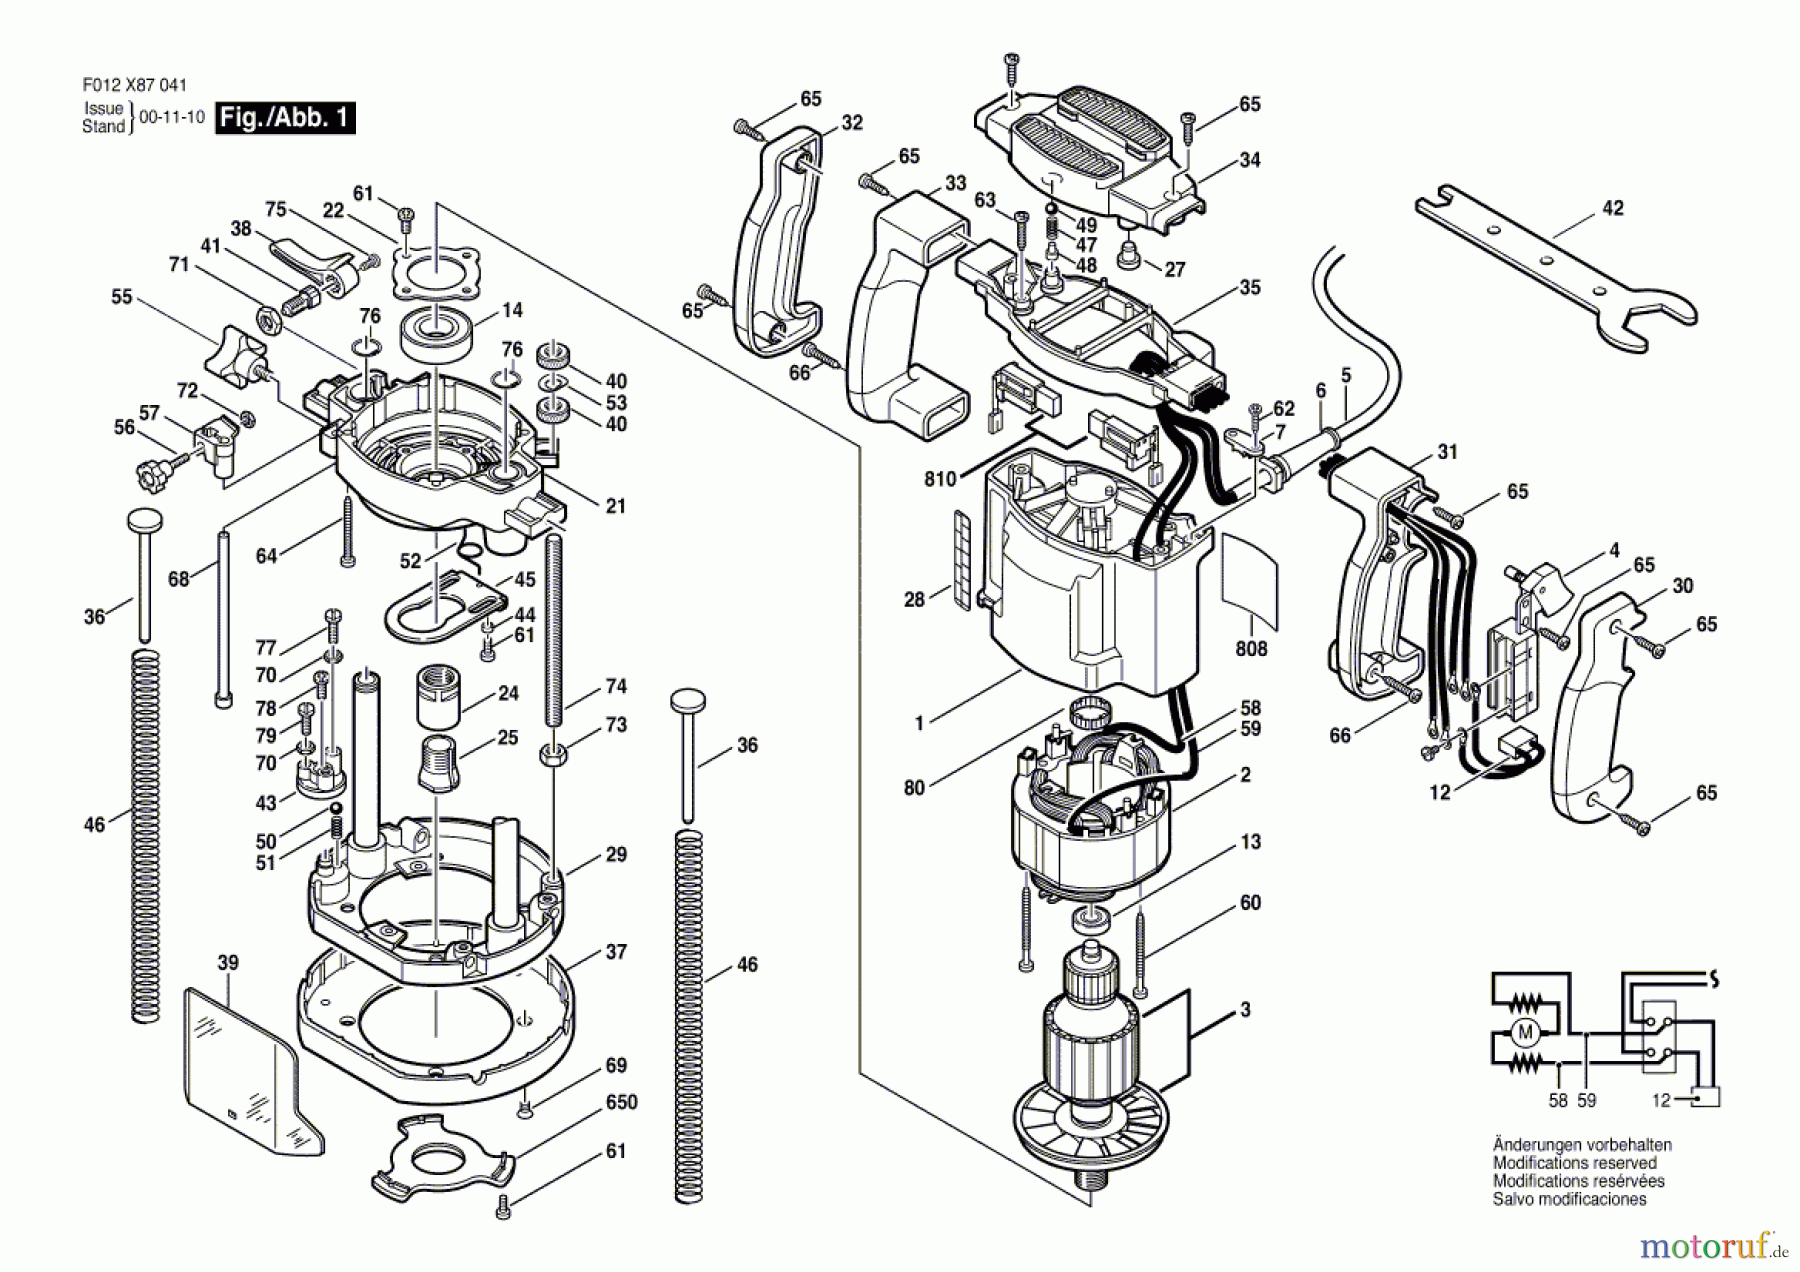  Bosch Werkzeug Oberfräse 1870 TYPE 1 Seite 1